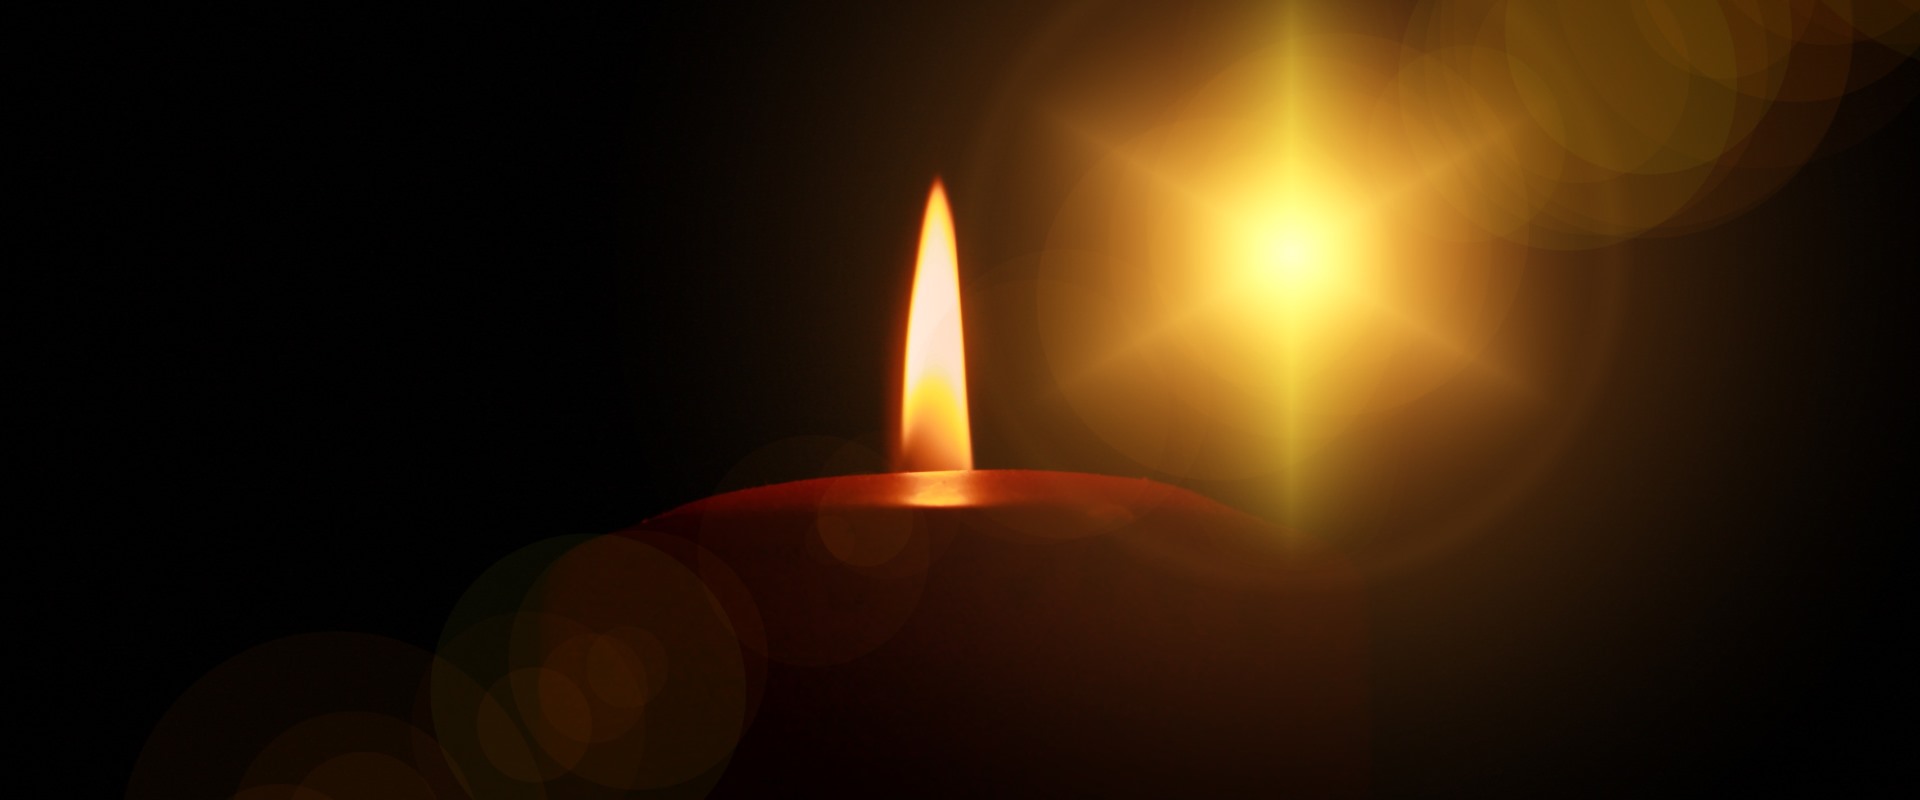 Eine Kerze brennt in der Nacht und erzeugt einen schönen Schein.  